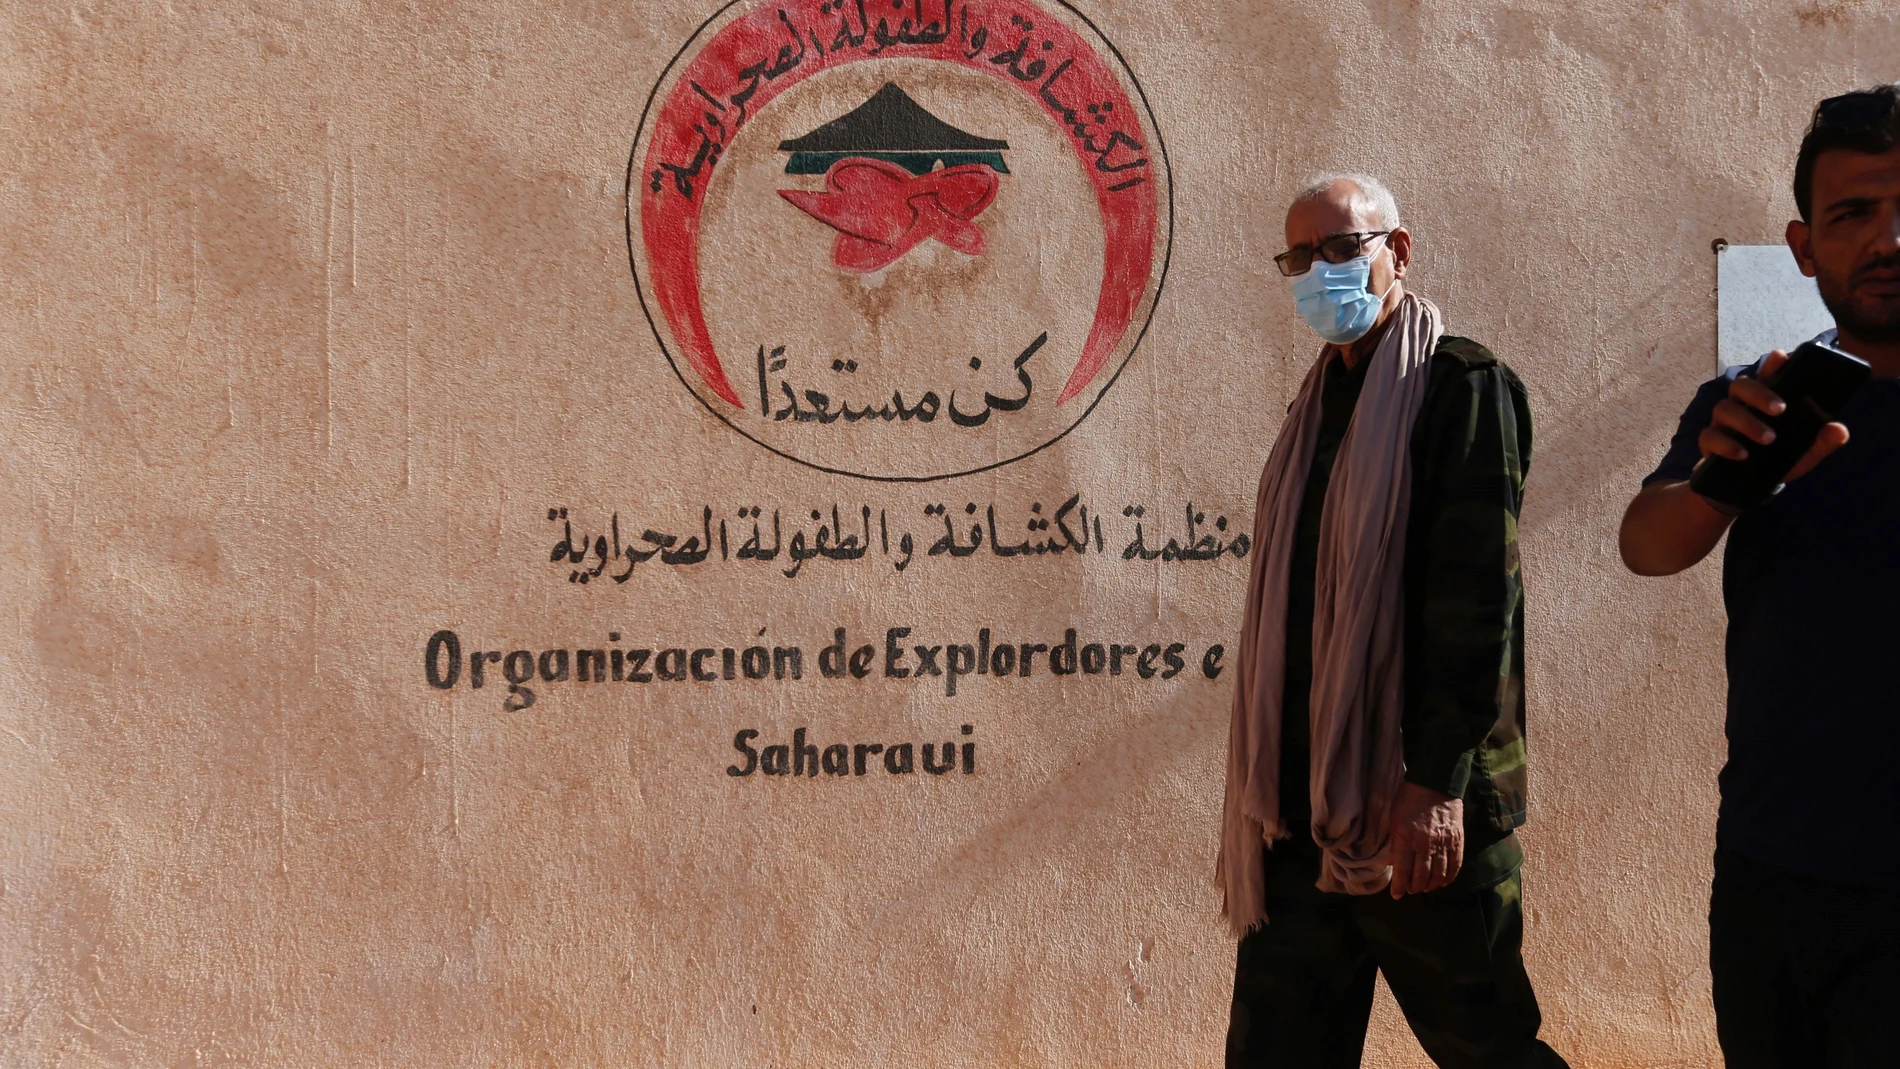 El líder del Frente Polisario y presidente de la República Árabe Saharaui Democrática (RASD), Brahim Ghali. EFE/Manuel Lorenzo